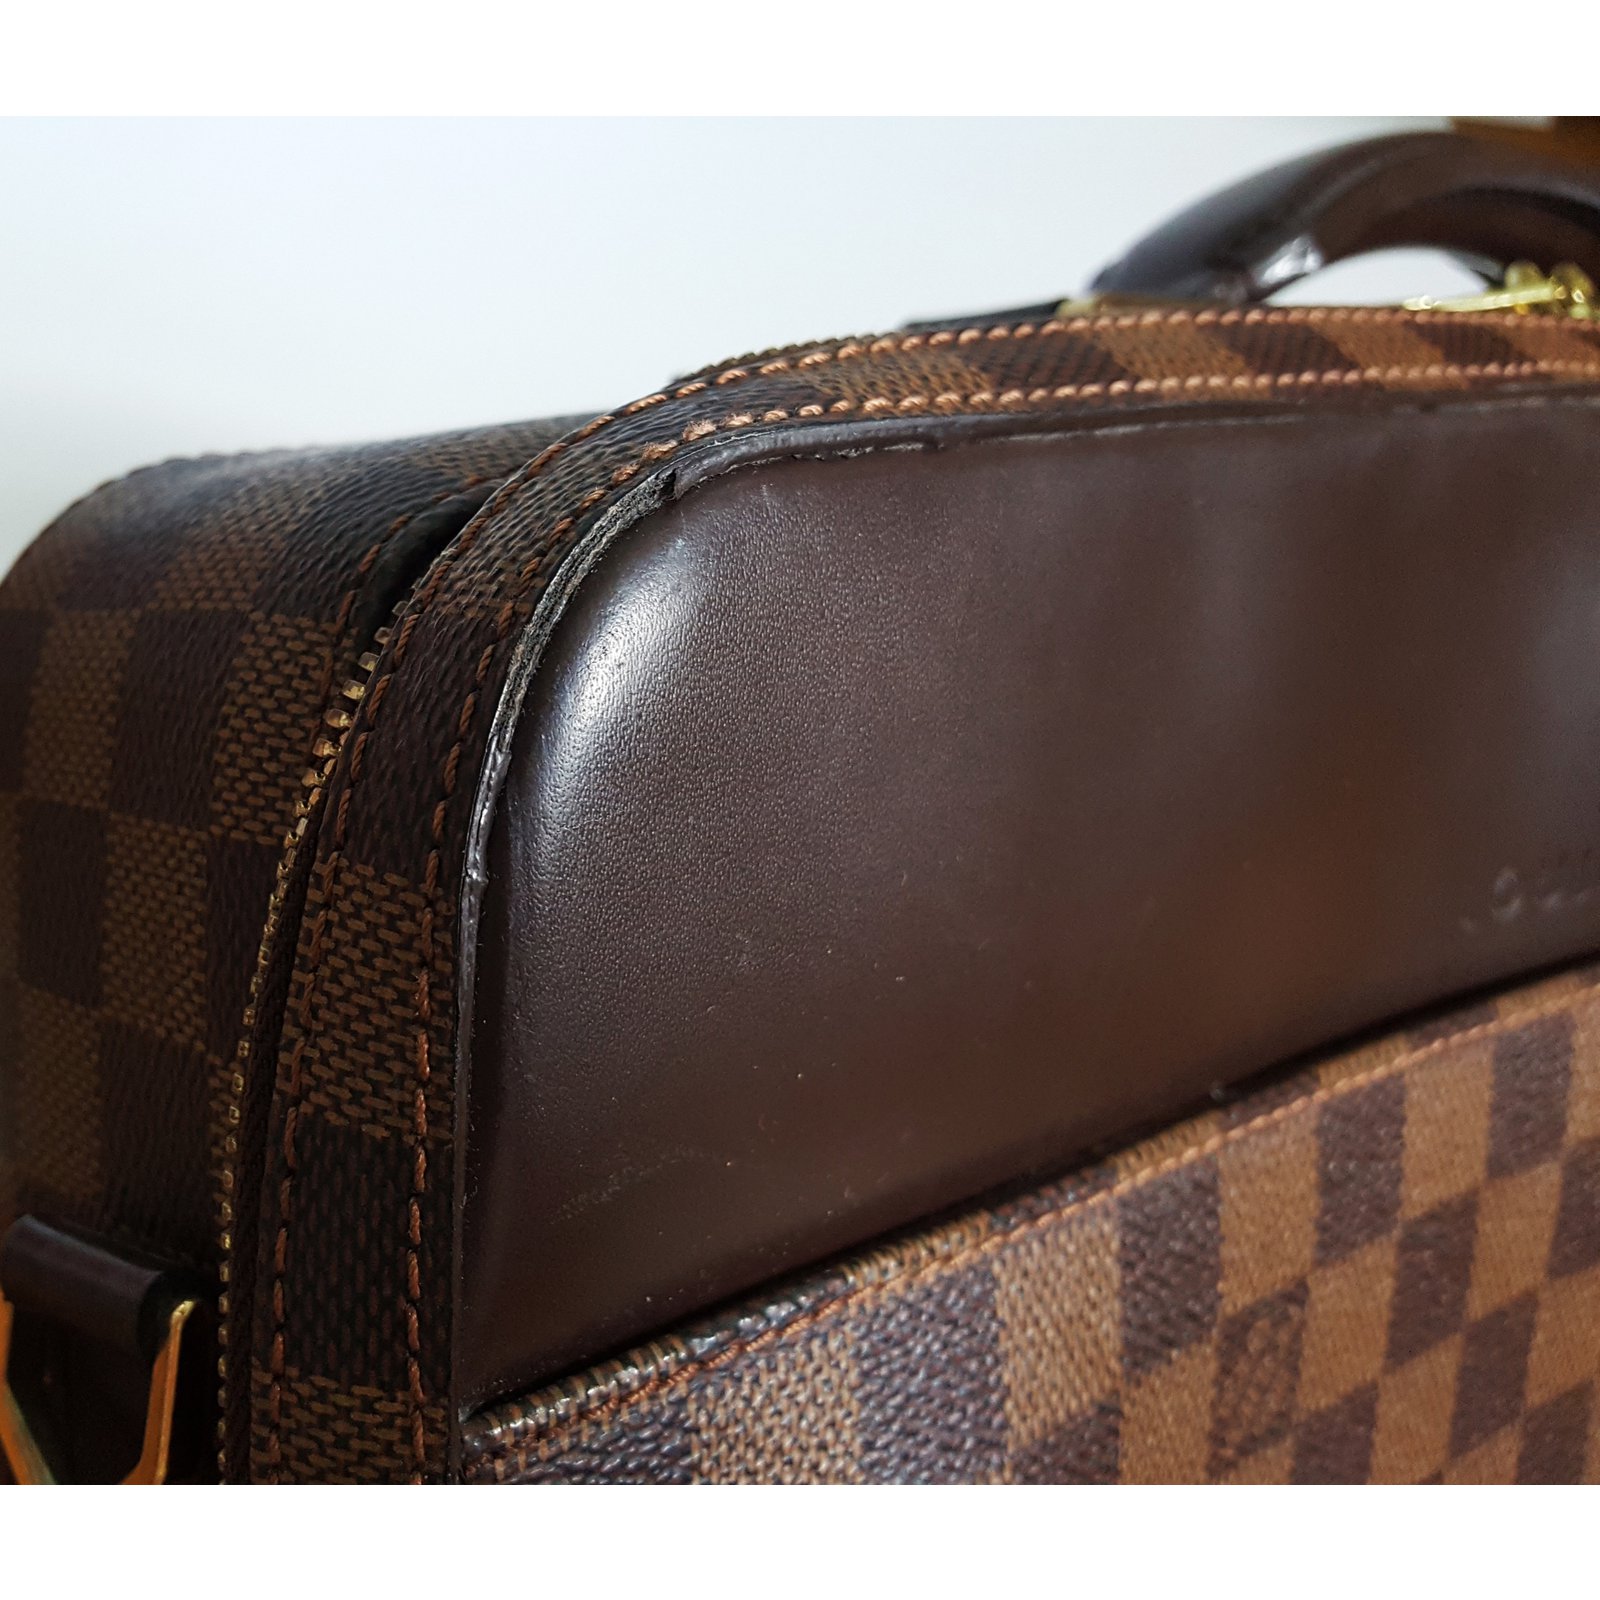 Bag - Louis - Bag - Vuitton - Louis Vuitton Sabana briefcase in